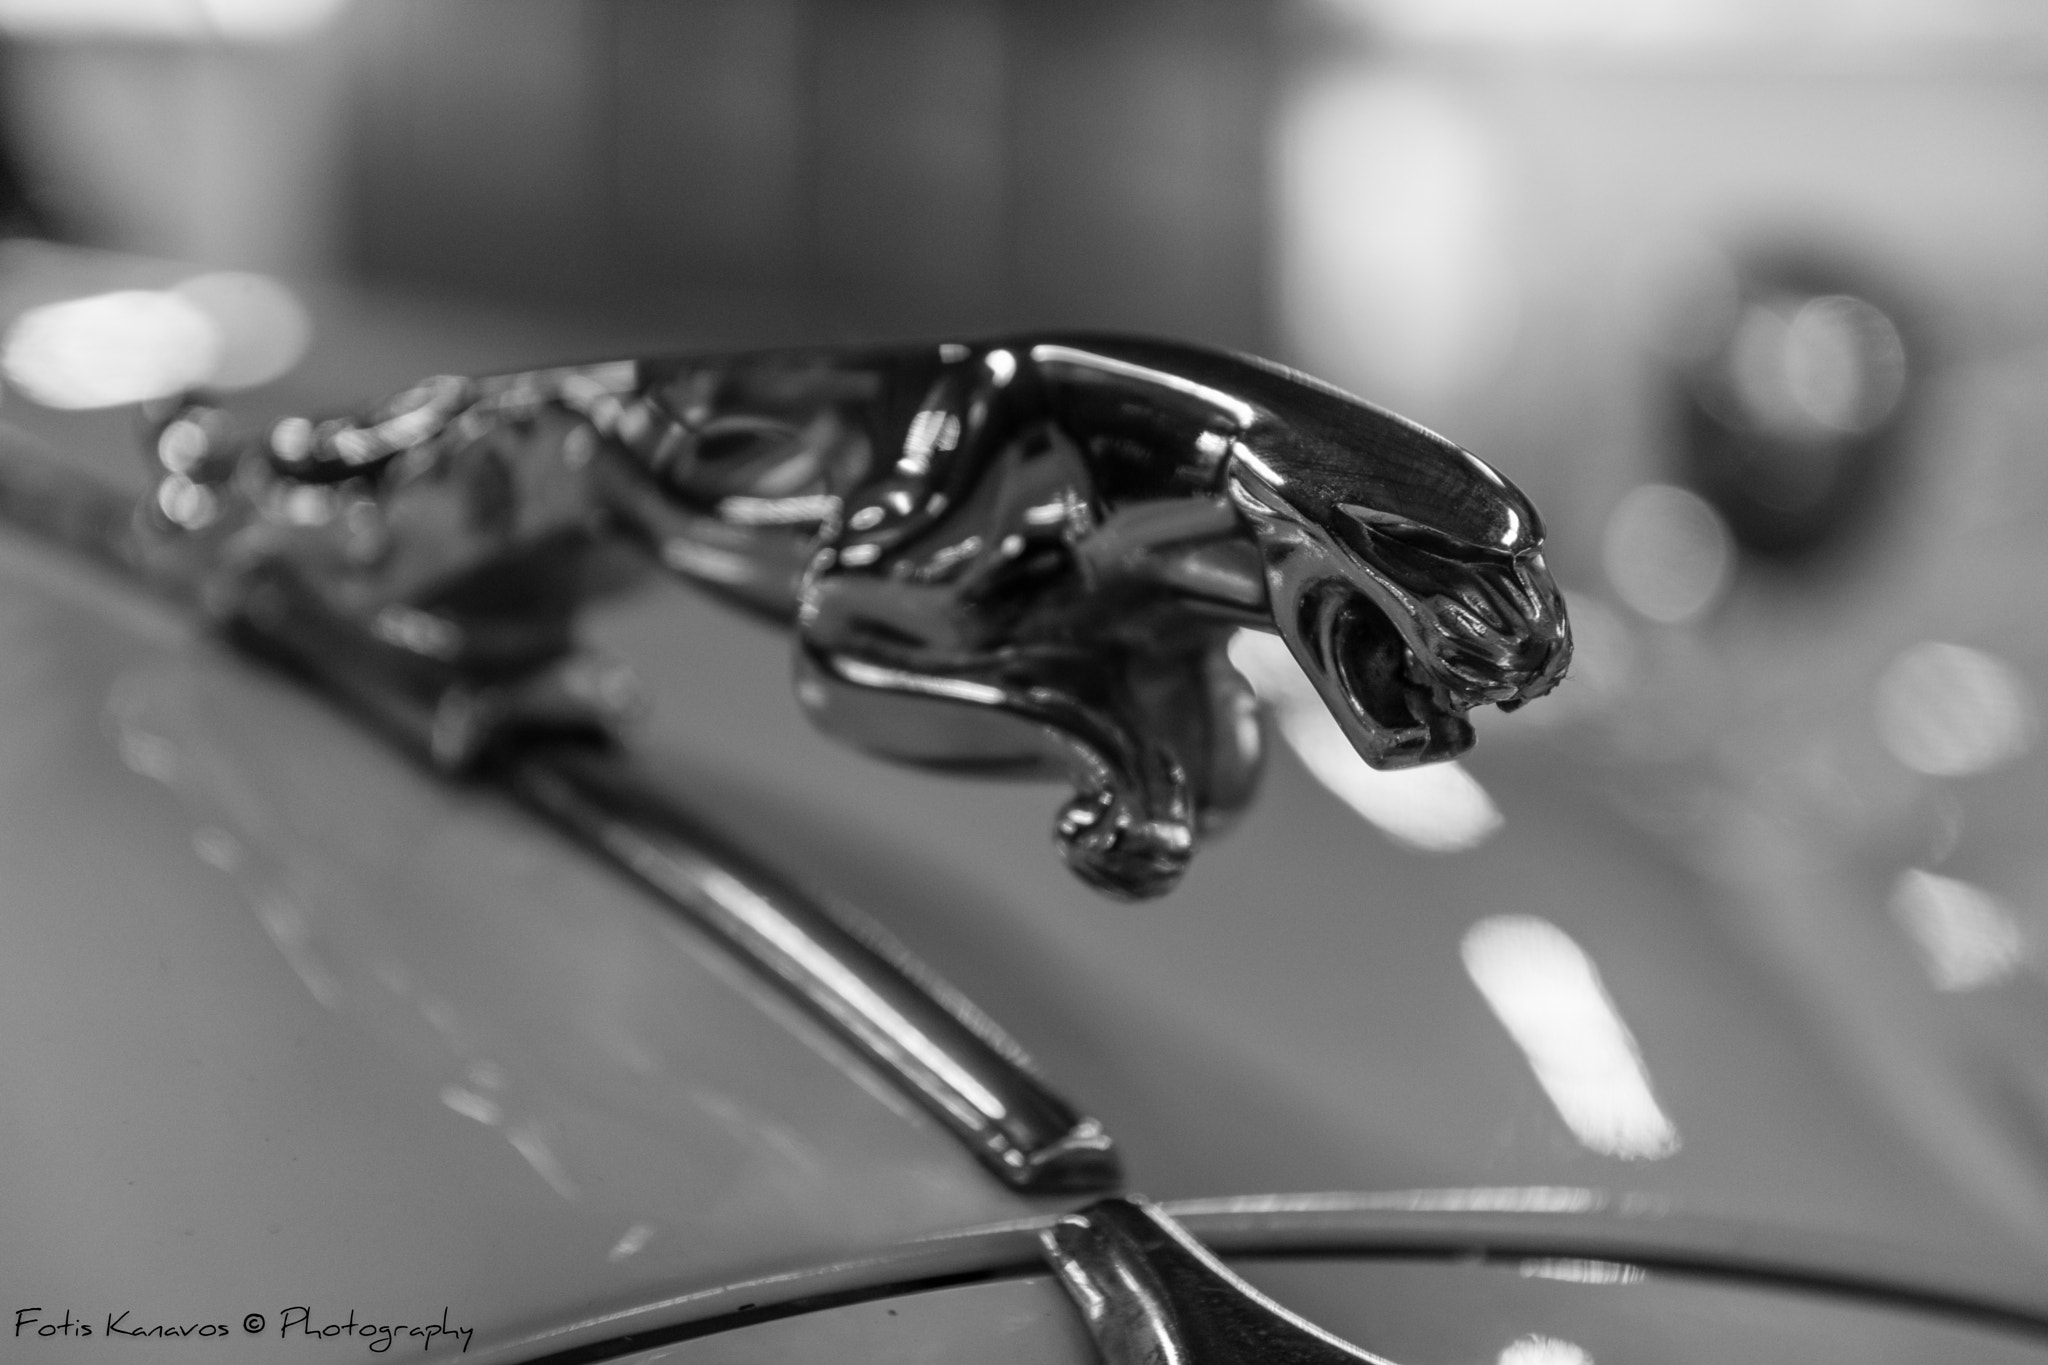 AF-S VR DX 16-80mm f/2.8-4.0E ED sample photo. Jaguar !! photography